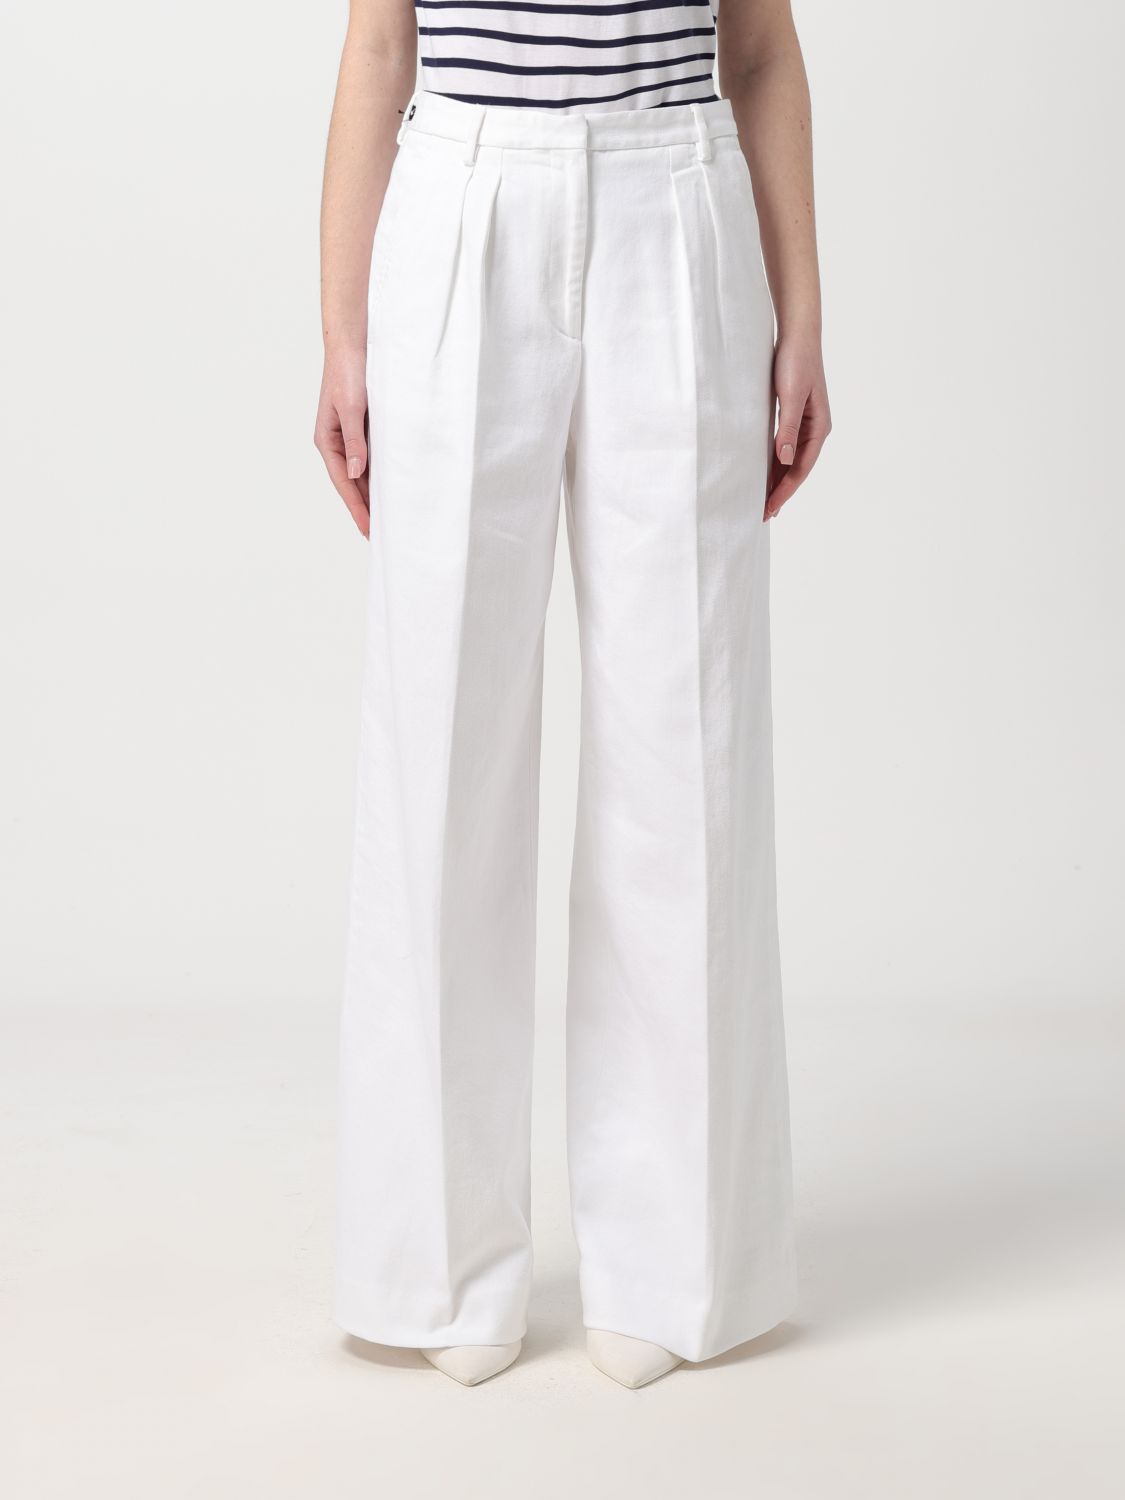 Shop Officine Generale Pants Officine Générale Woman Color White